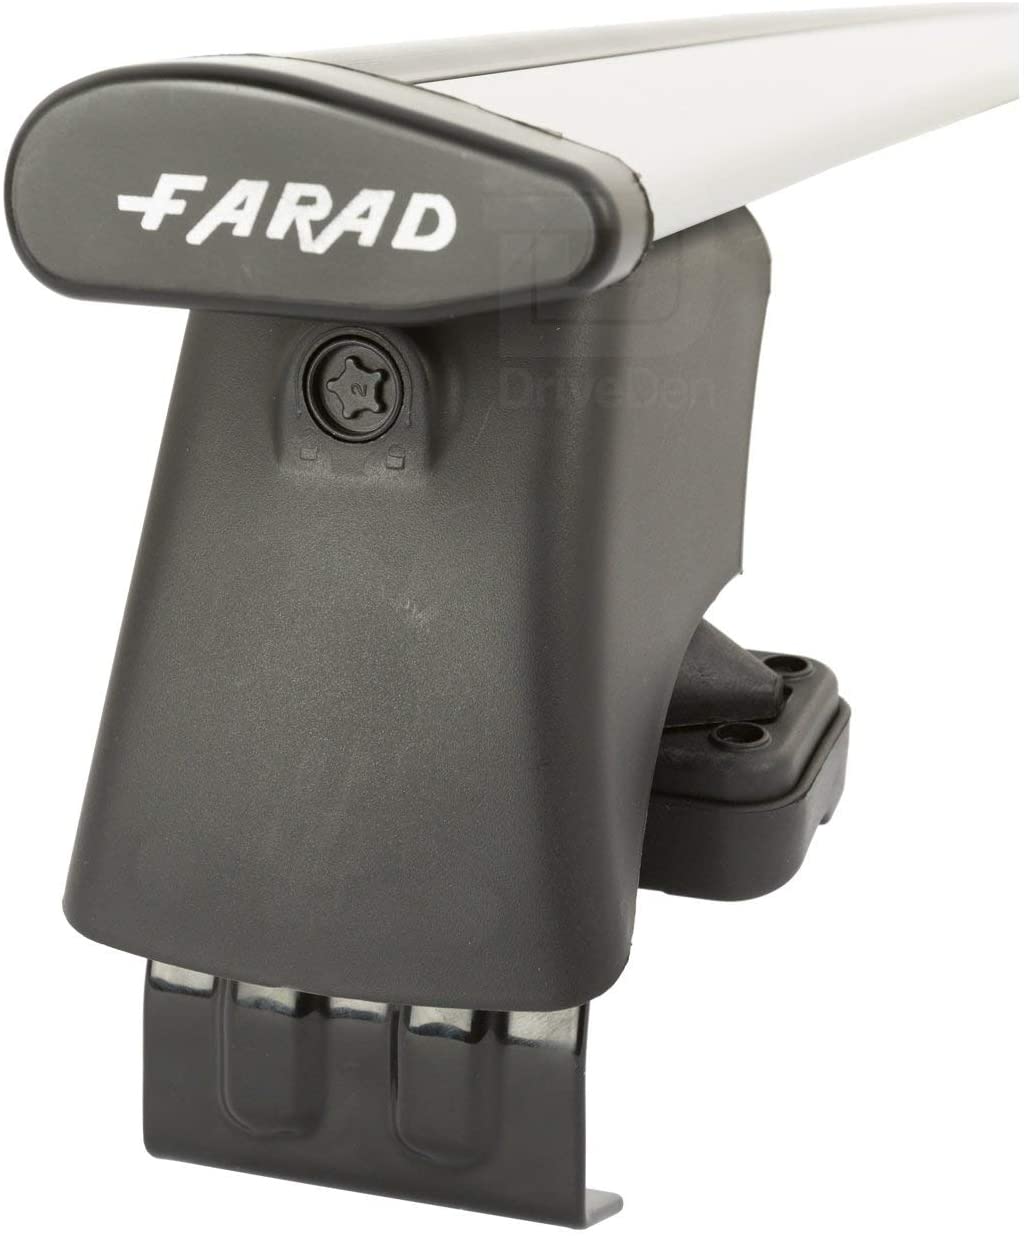 FARAD-Kit H2 per barre portatutto - Land Rover Rang Rover Evoque 2011-2019 (senza corrimano)